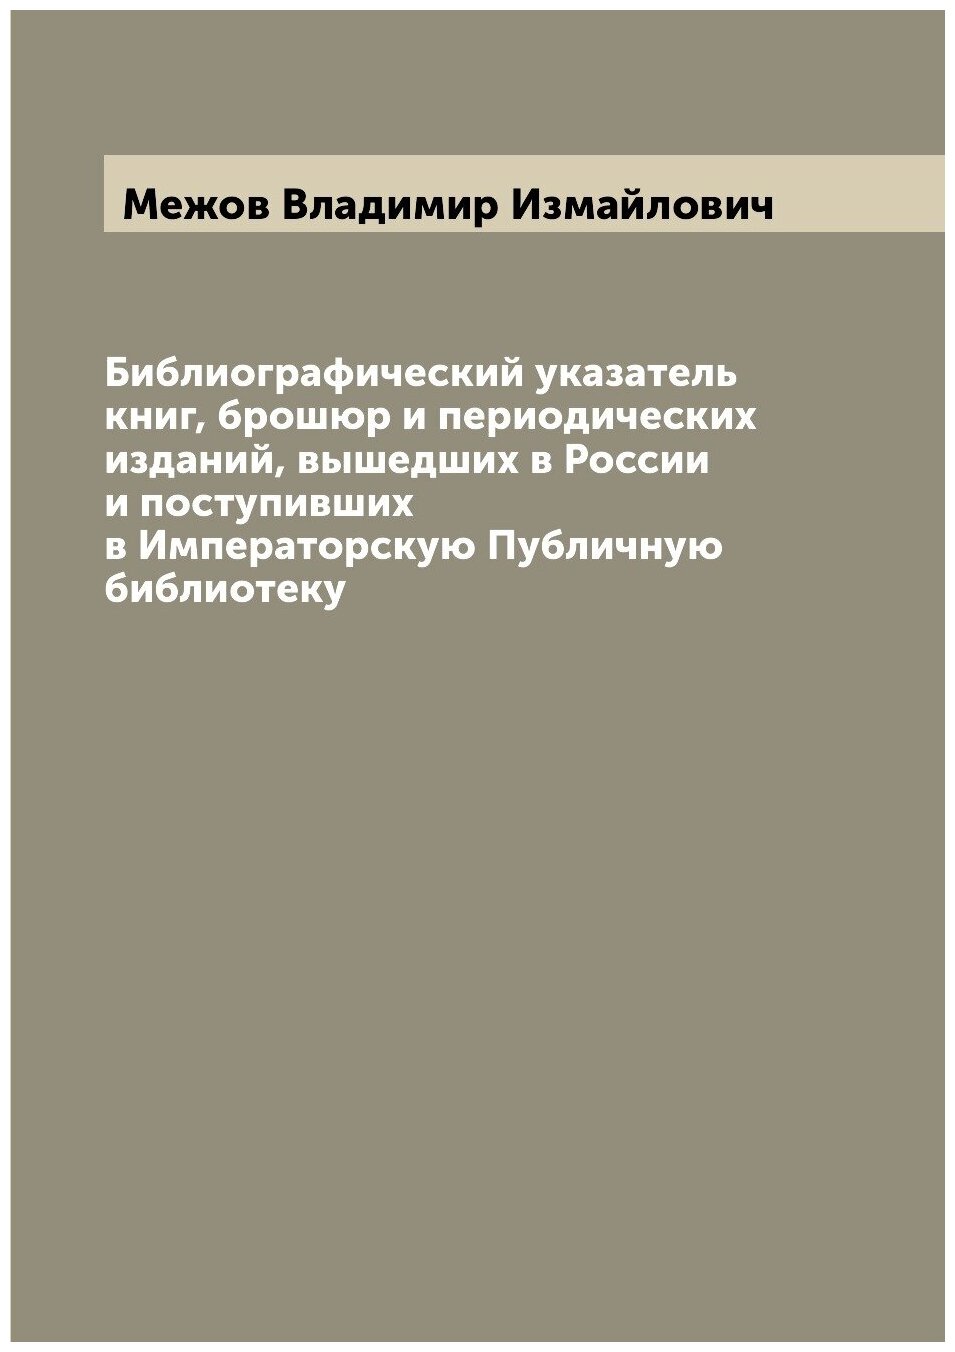 Библиографический указатель книг, брошюр и периодических изданий, вышедших в России и поступивших в Императорскую Публичную библиотеку